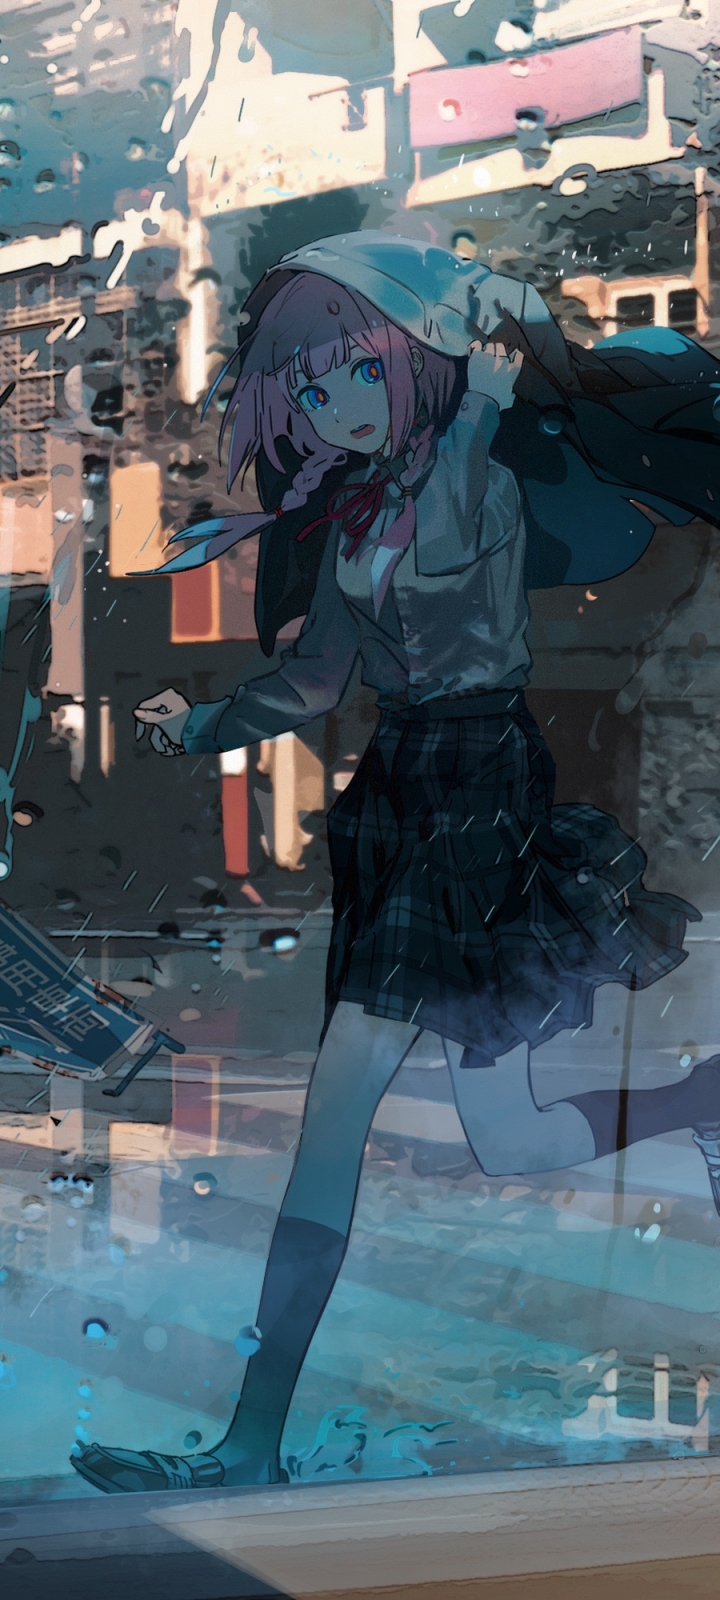 Download mobile wallpaper Anime, Rain, Girl for free.